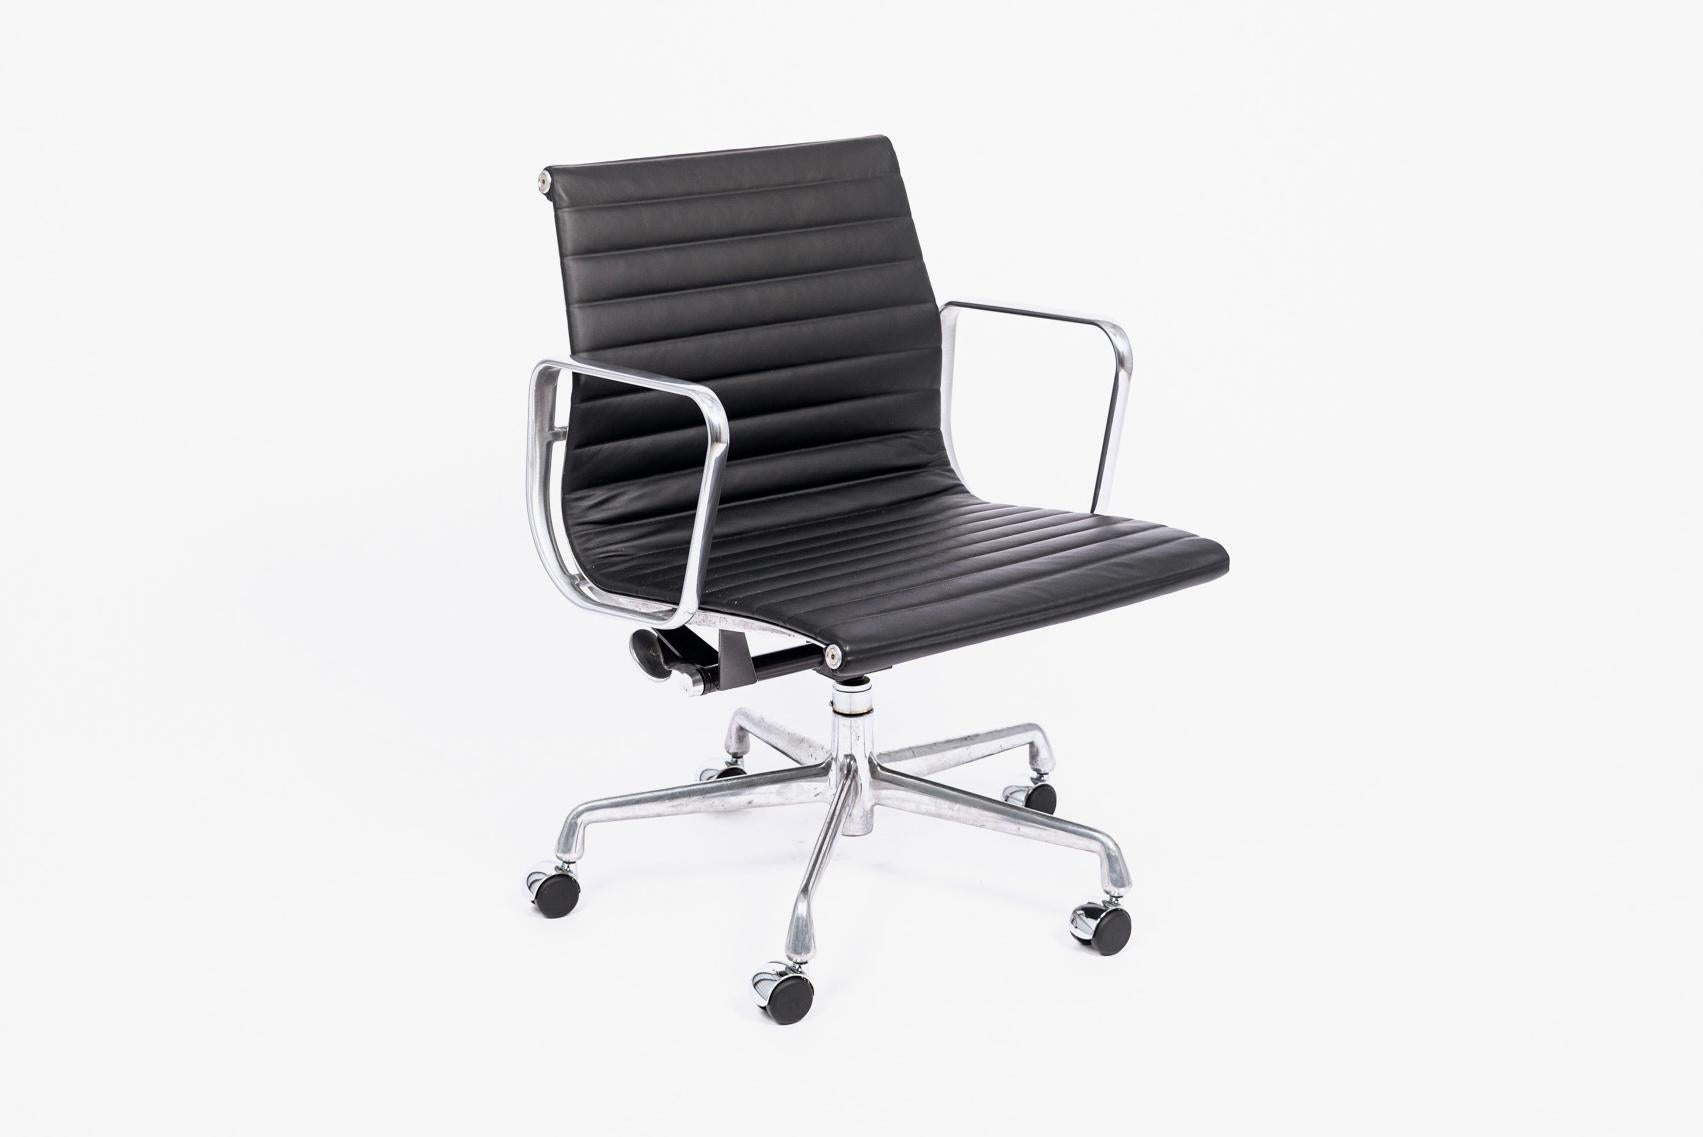 Der Bürostuhl Aluminum Group Management, entworfen von Charles & Ray Eames für Herman Miller, gehört zur Eames Aluminum Group Collection'S. Diese unverwechselbaren Stühle sind das Ergebnis der Experimente der Eames mit Aluminium, das nach dem